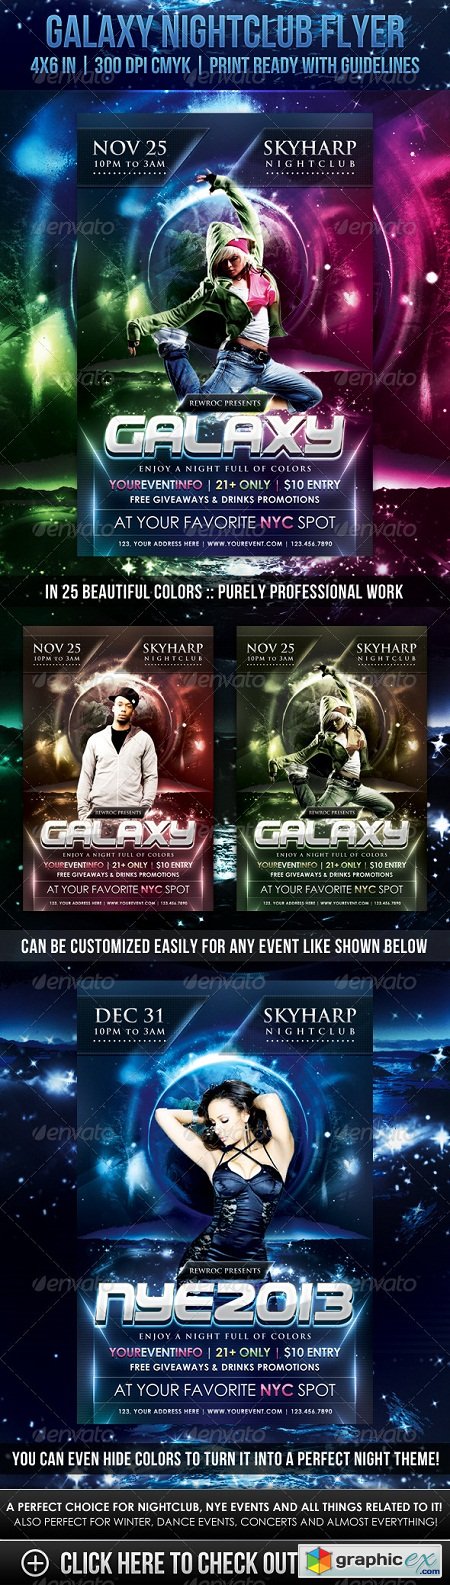 Galaxy Nightclub Flyer